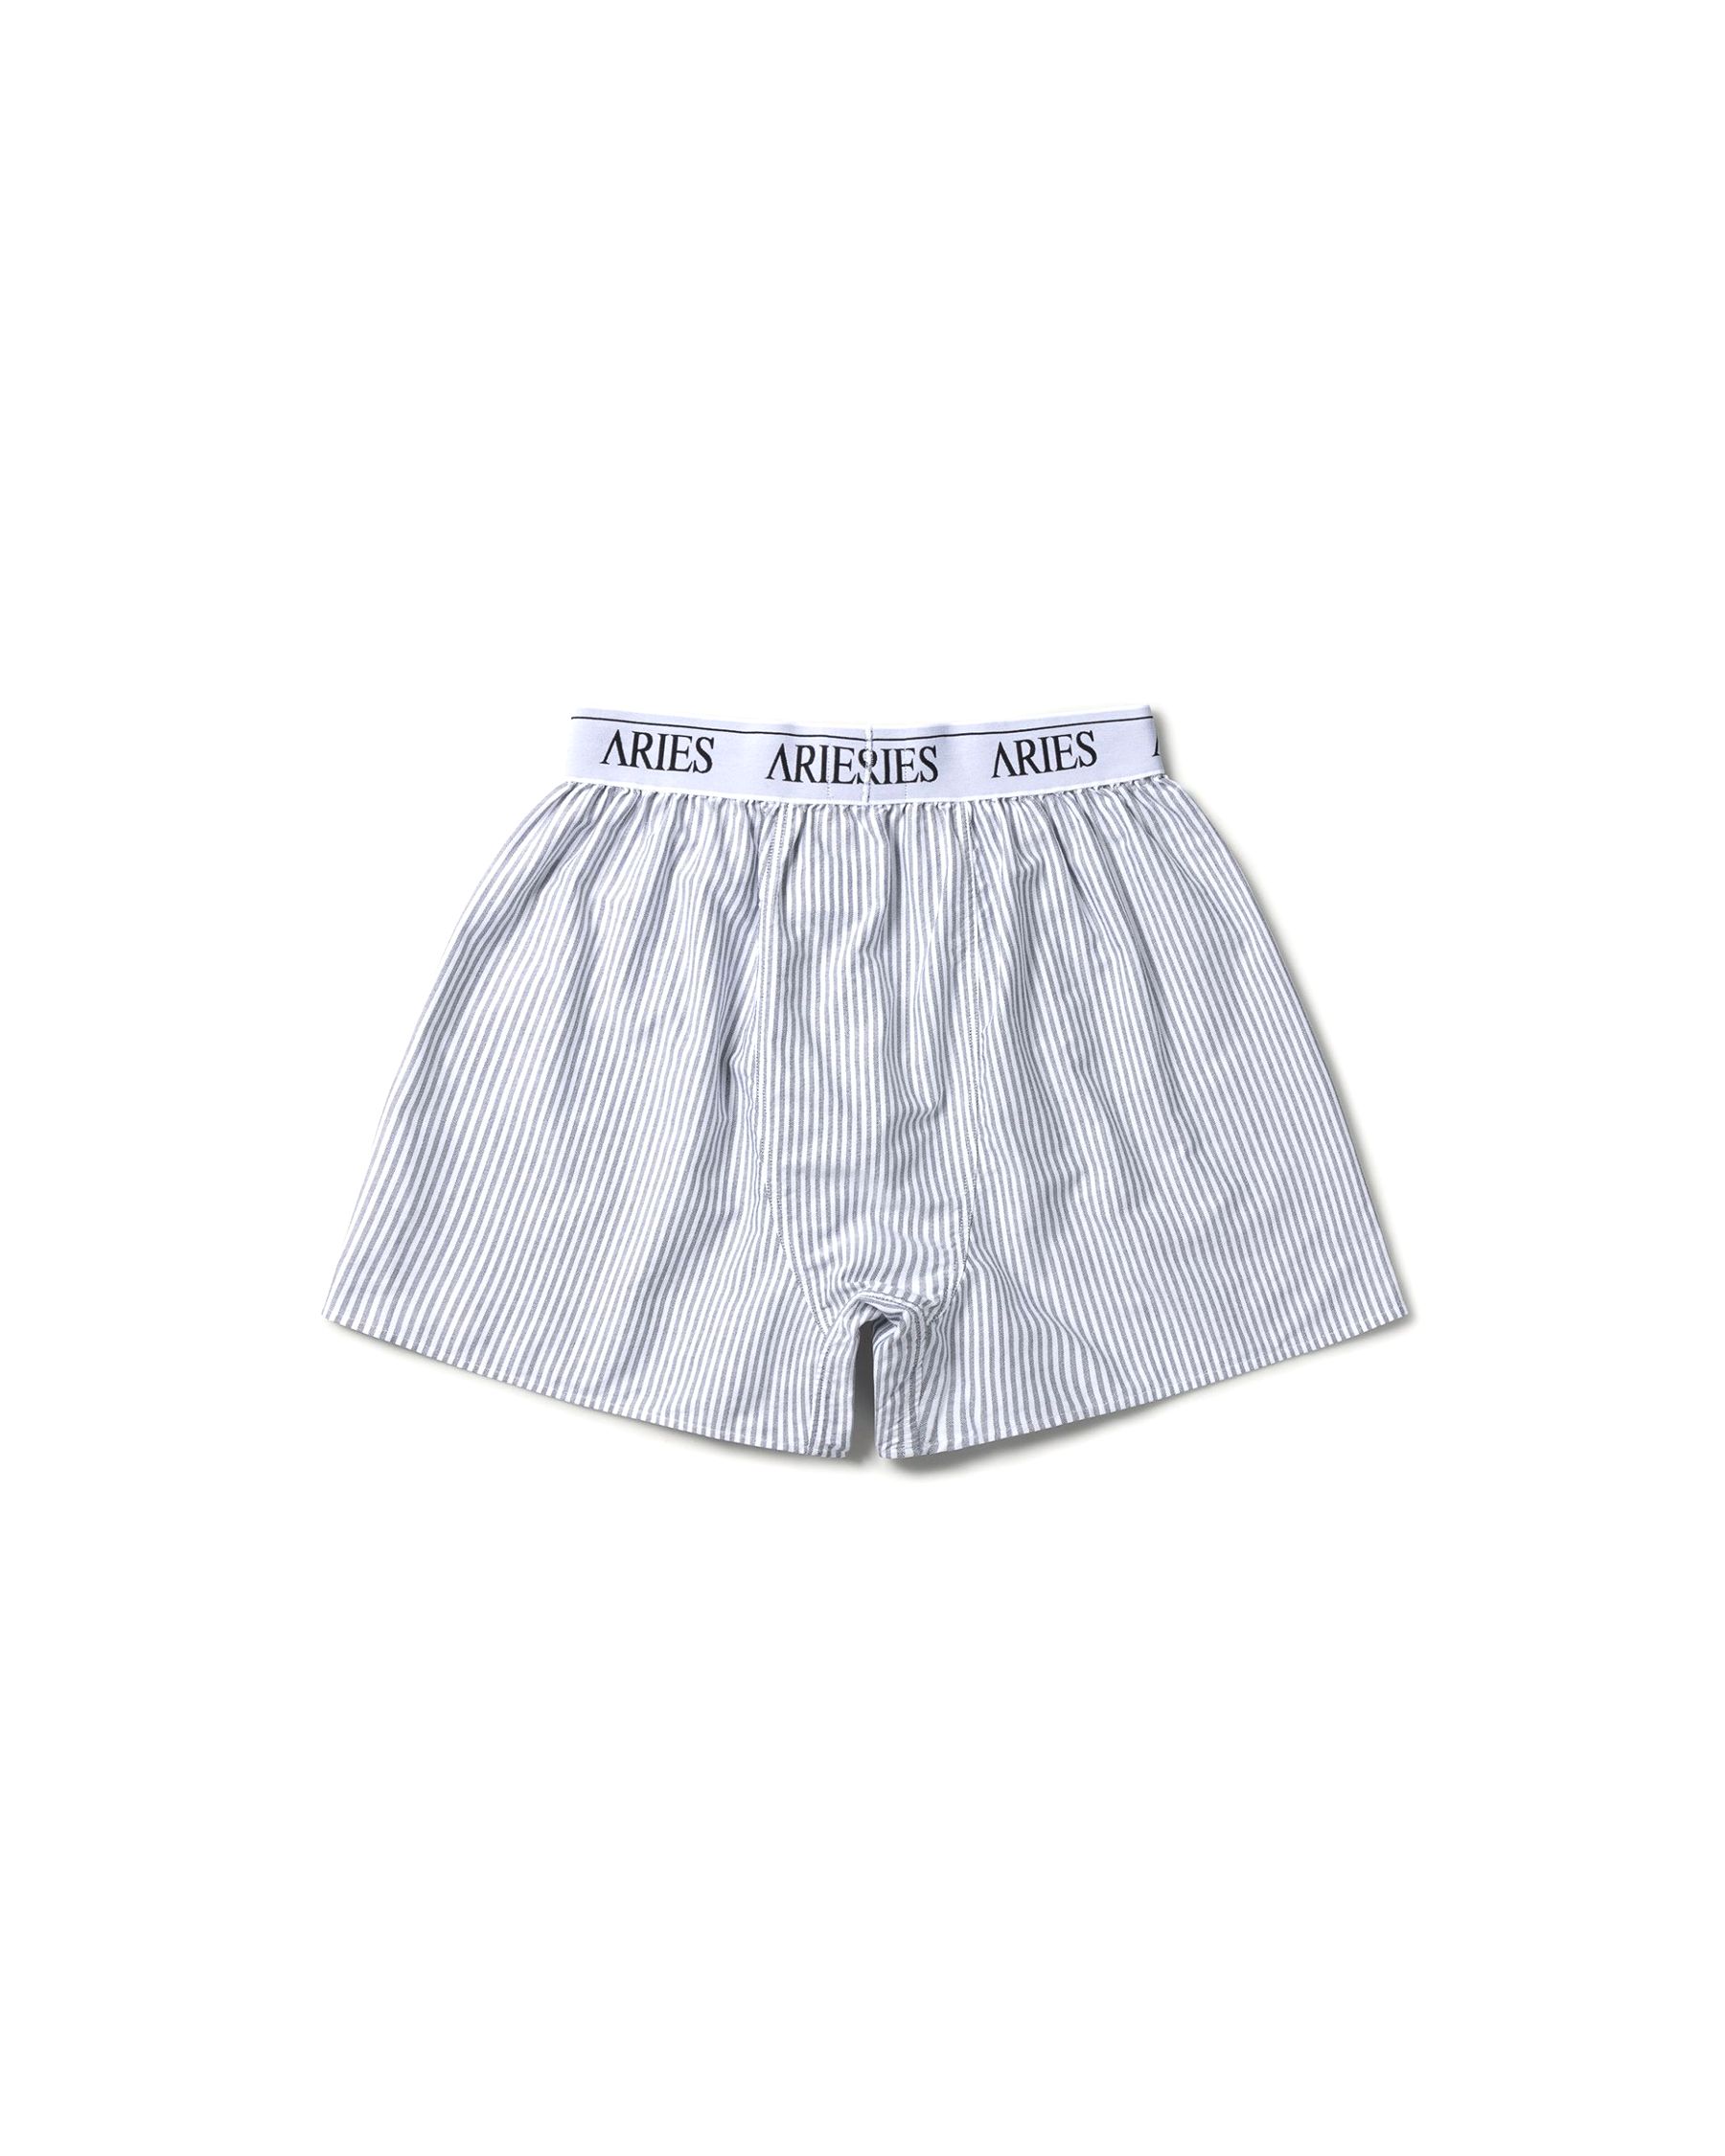 Temple Boxer Shorts - Black